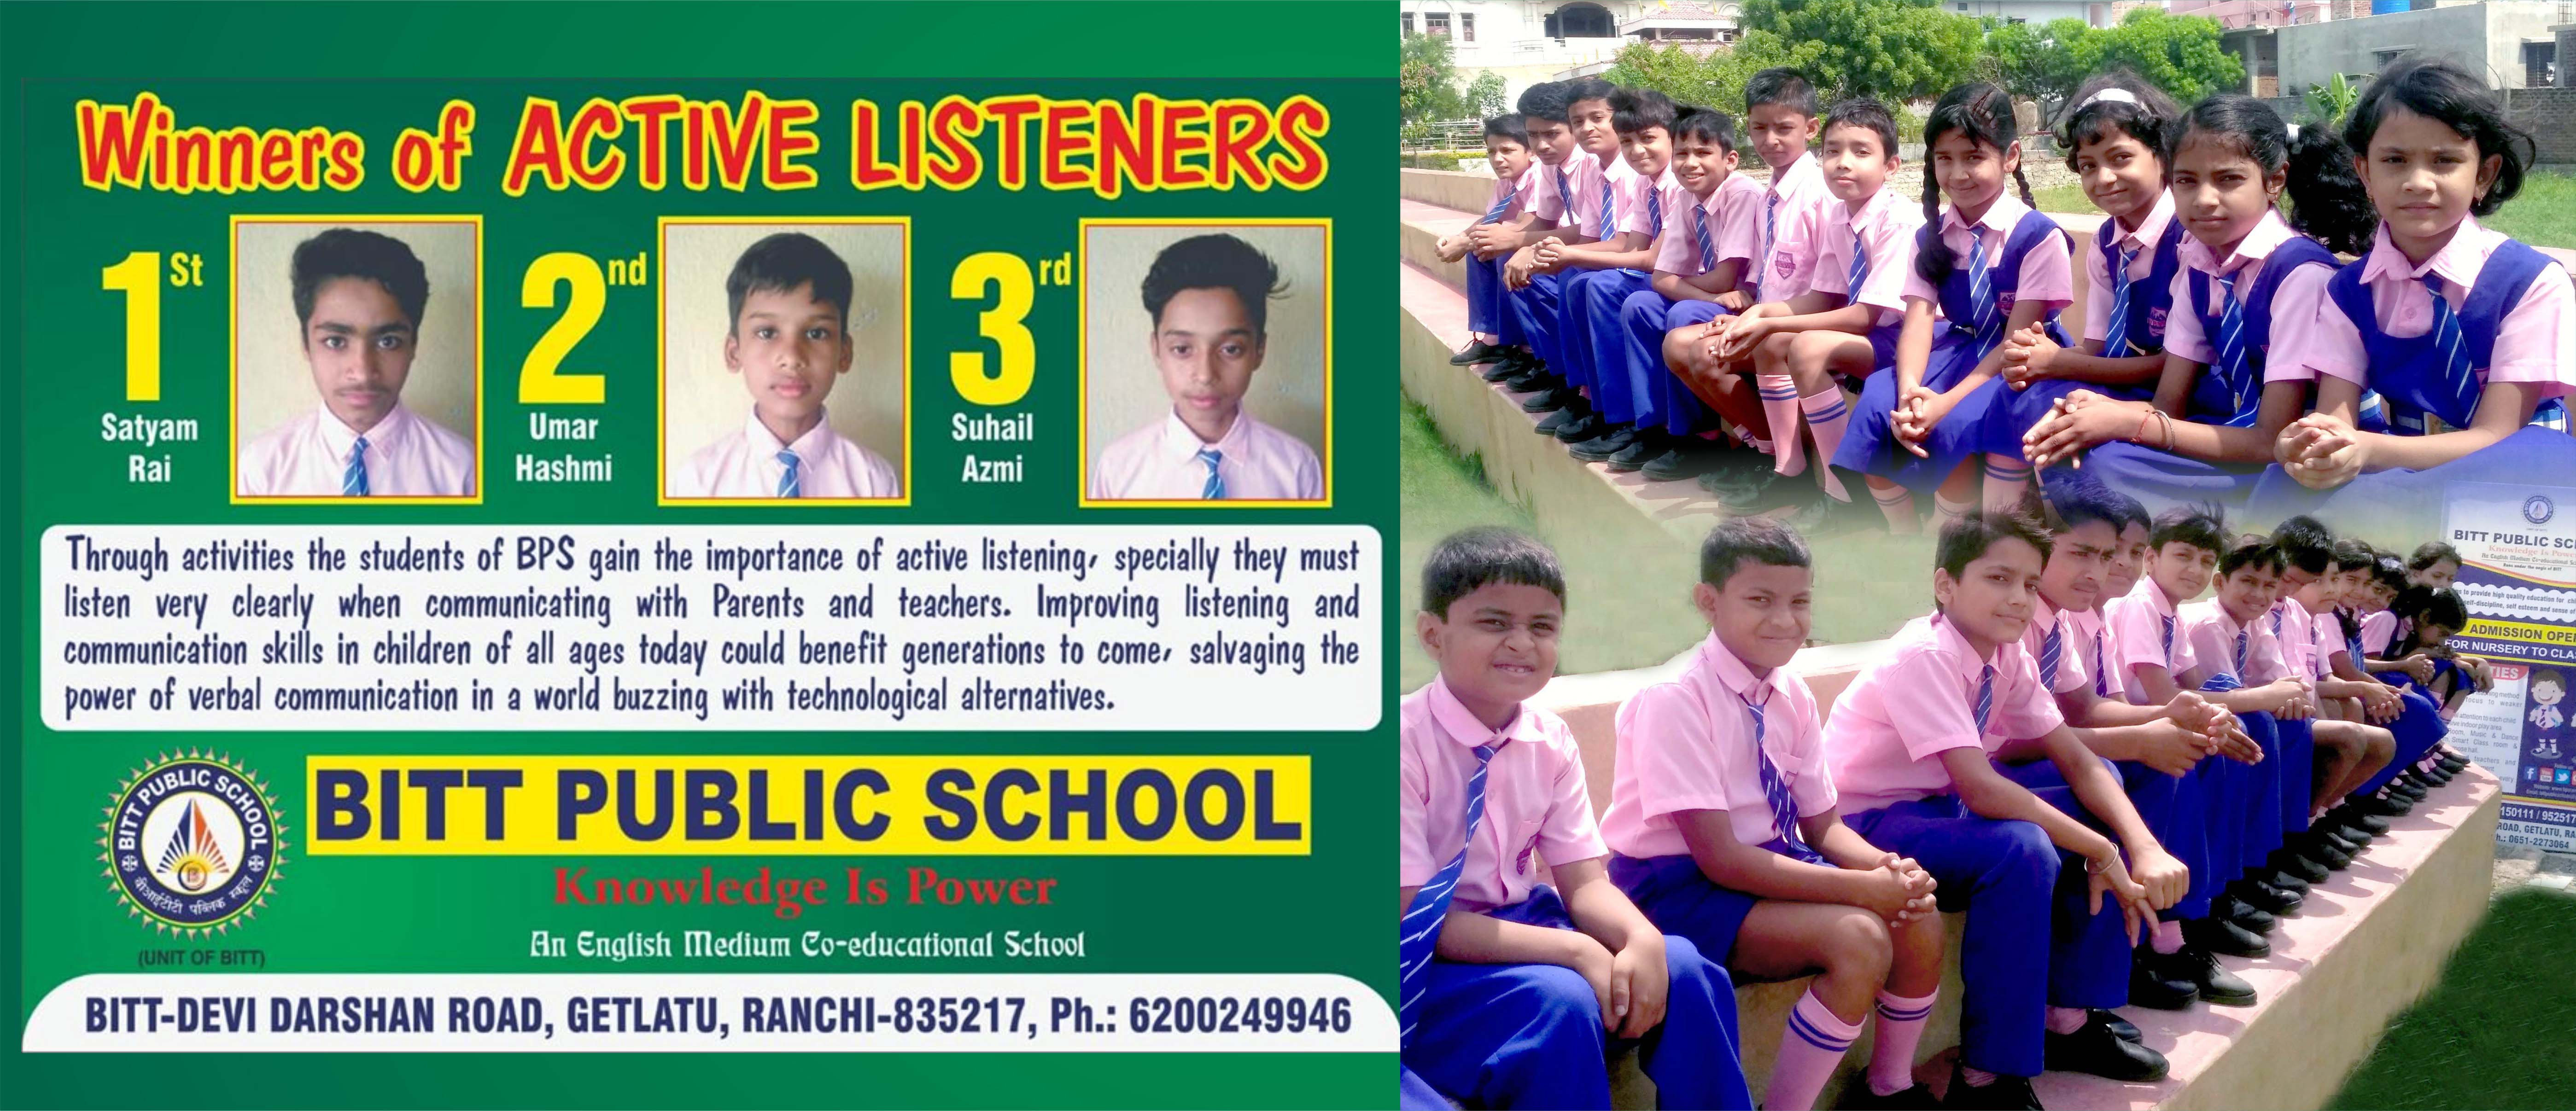 BITT Public School, Best School in Ranchi, Best Private School, Best School in Jharkhand, Public School, BPS, BPS Ranchi, Best Public School in Ranchi